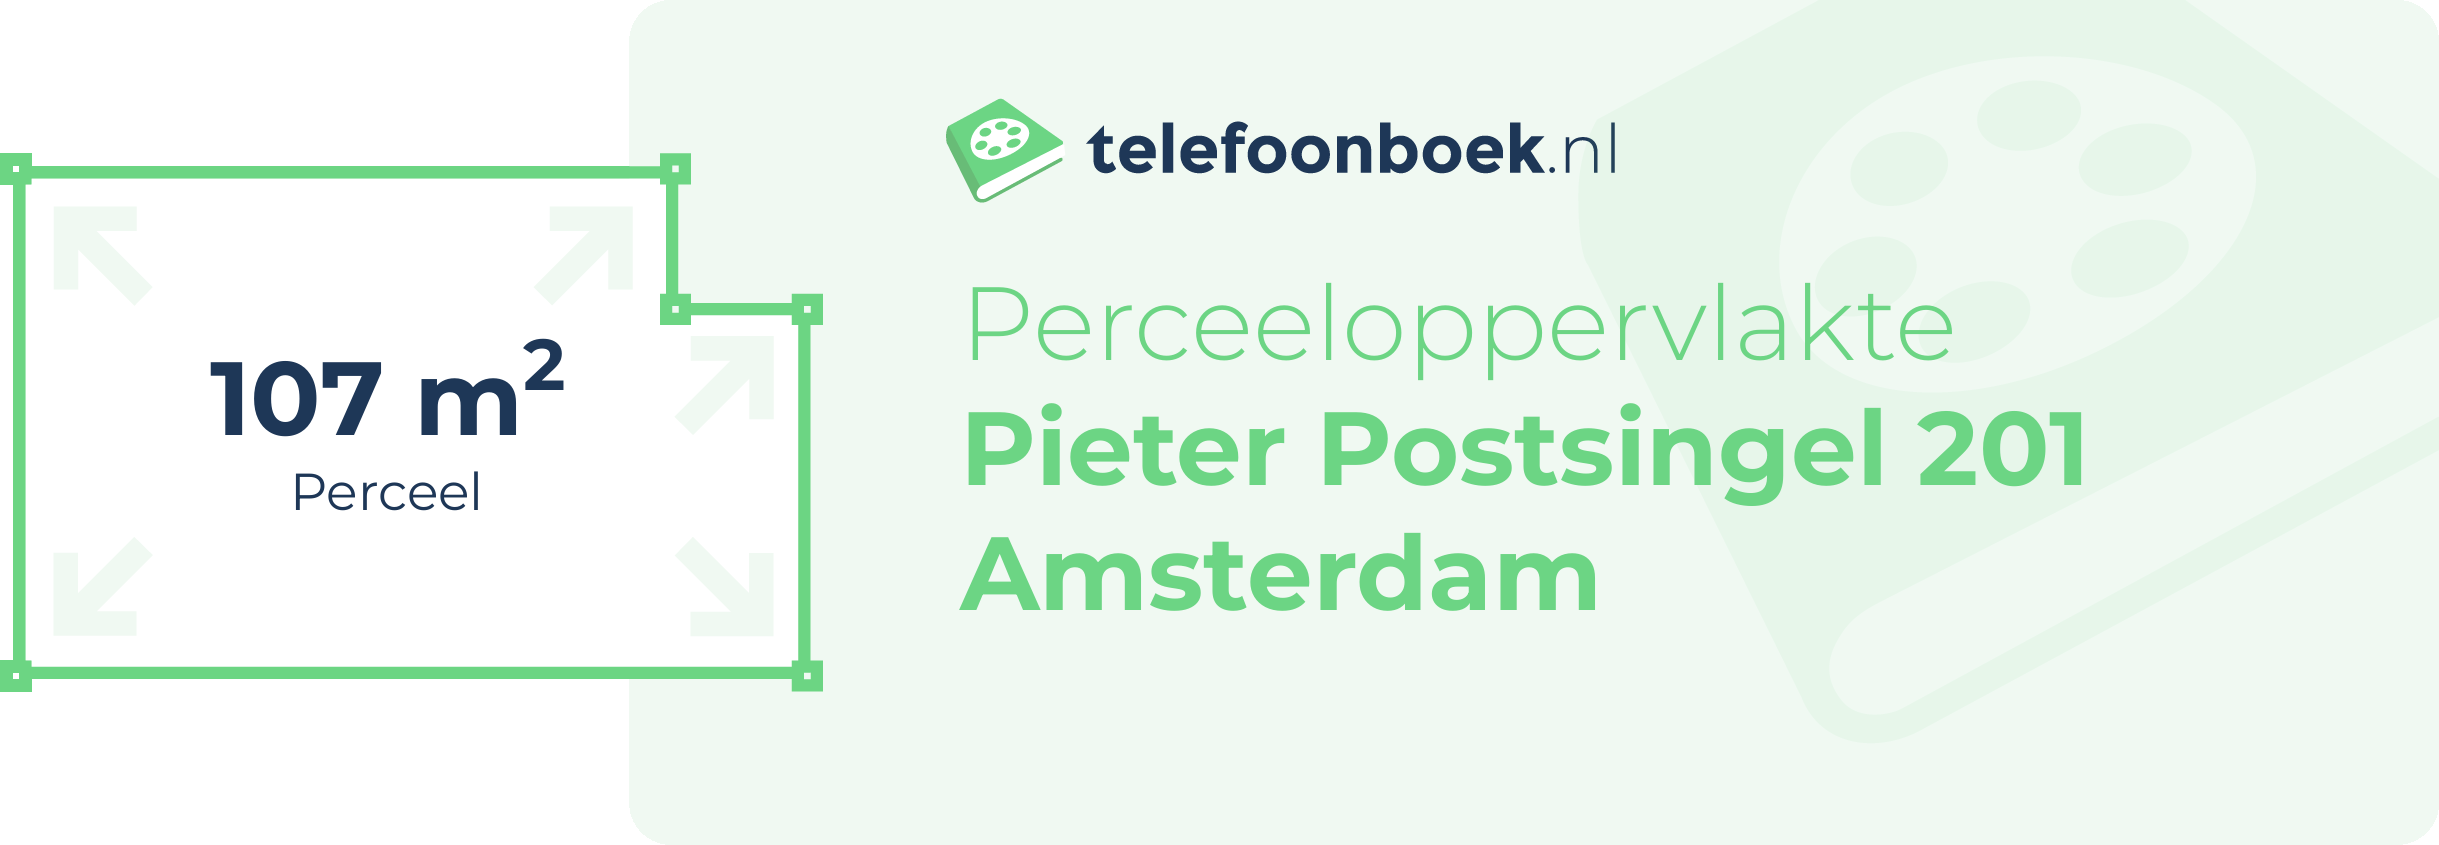 Perceeloppervlakte Pieter Postsingel 201 Amsterdam